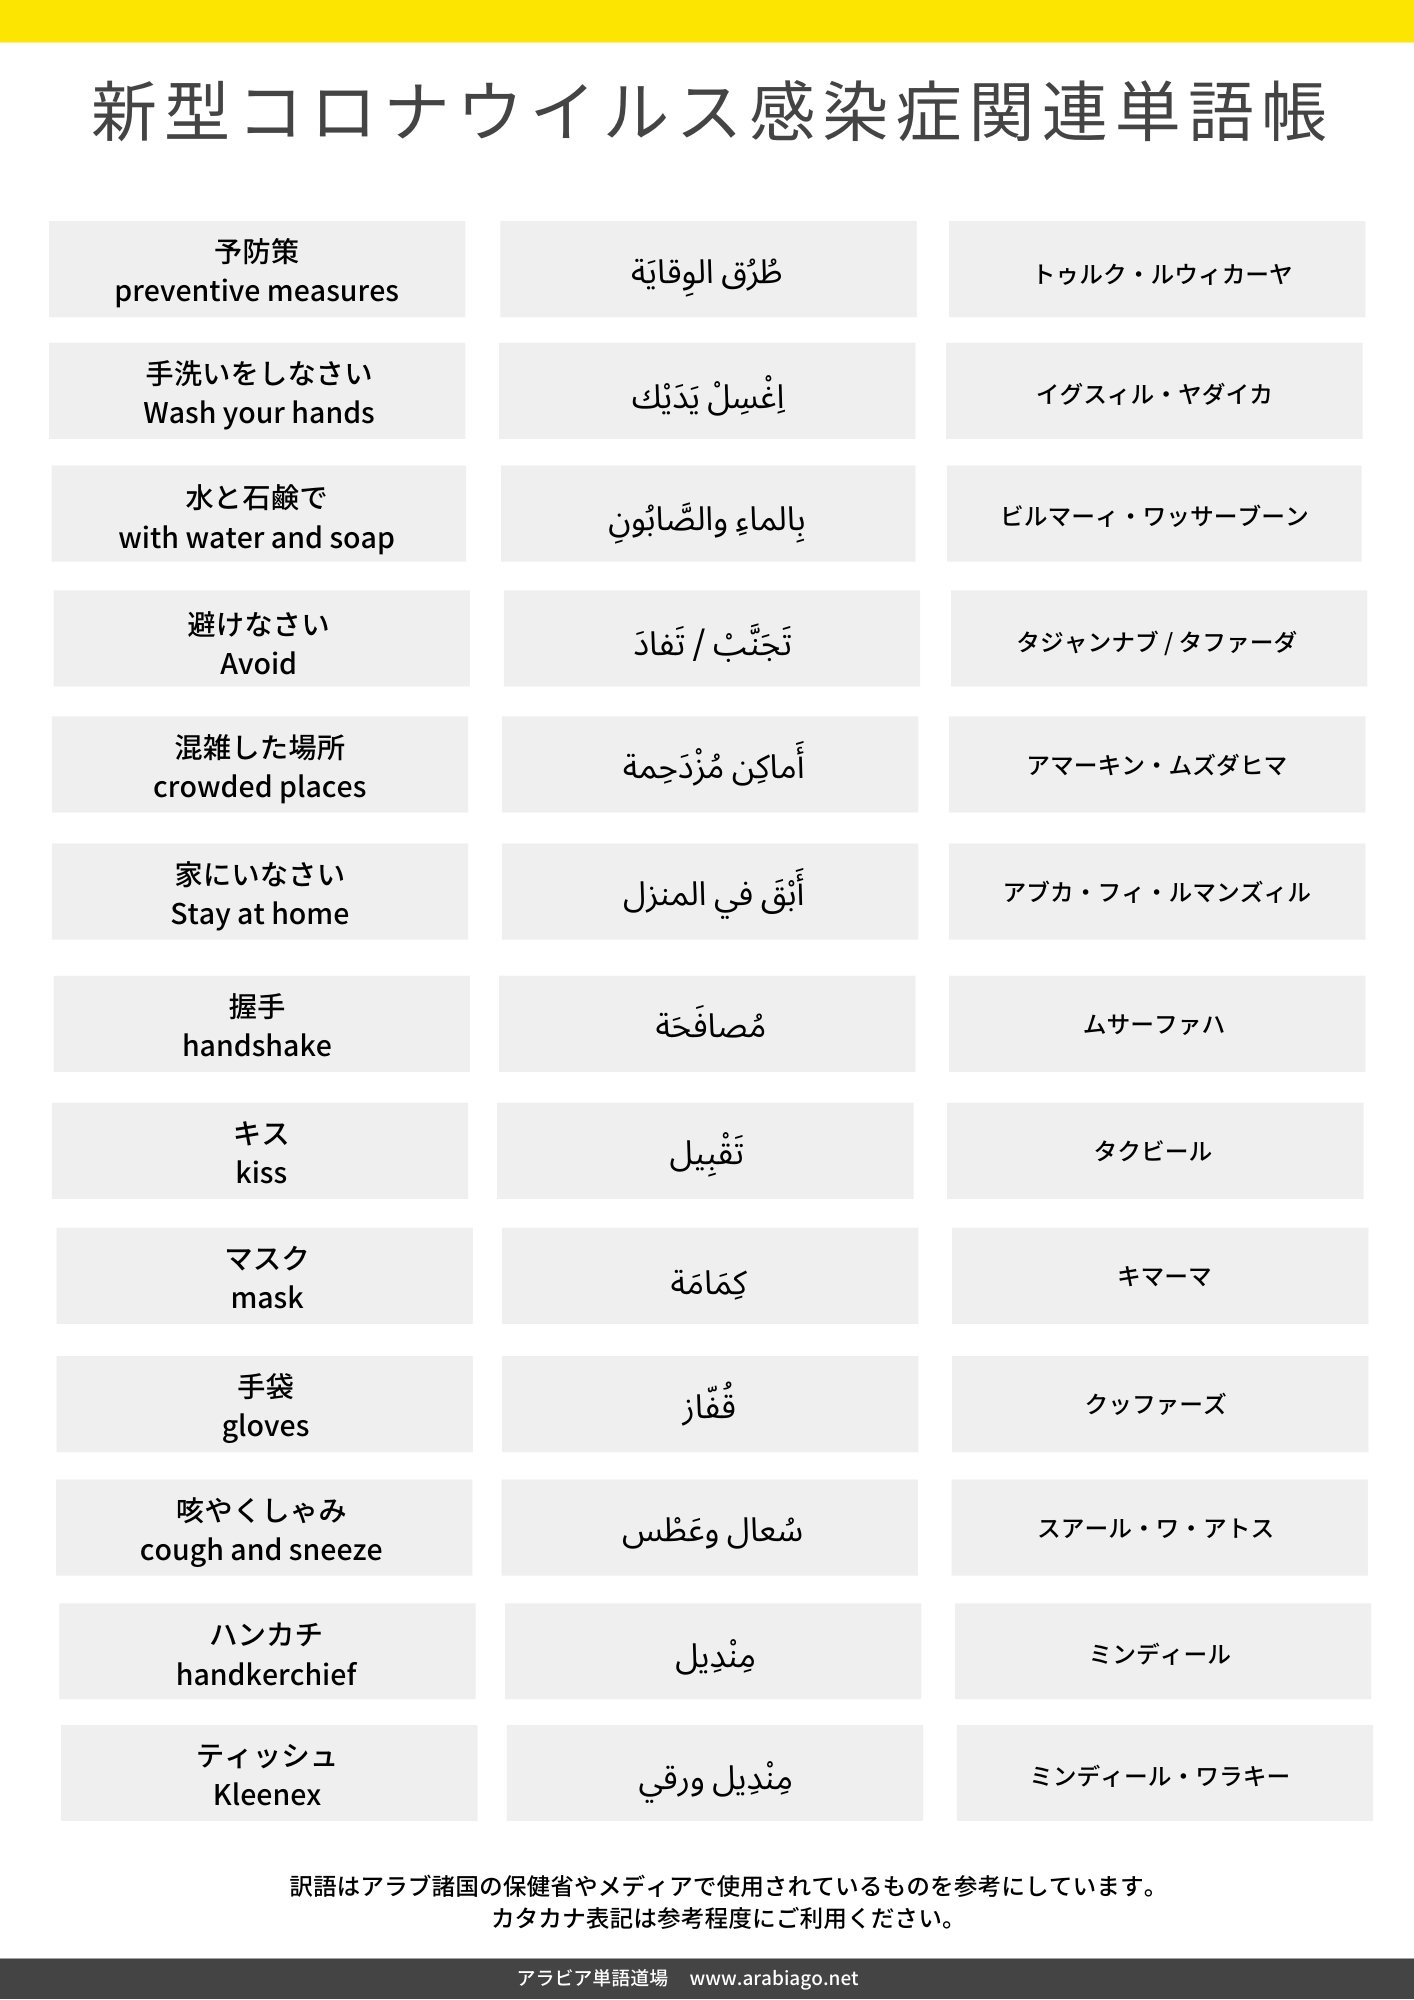 アラビア単語道場 新型コロナウイルス関連のアラビア語単語集を作成しました アラブ圏のメディアや保健省などで最近よく使われる単語を中心に整理したものです Covid19 新型コロナウイルス アラビア語